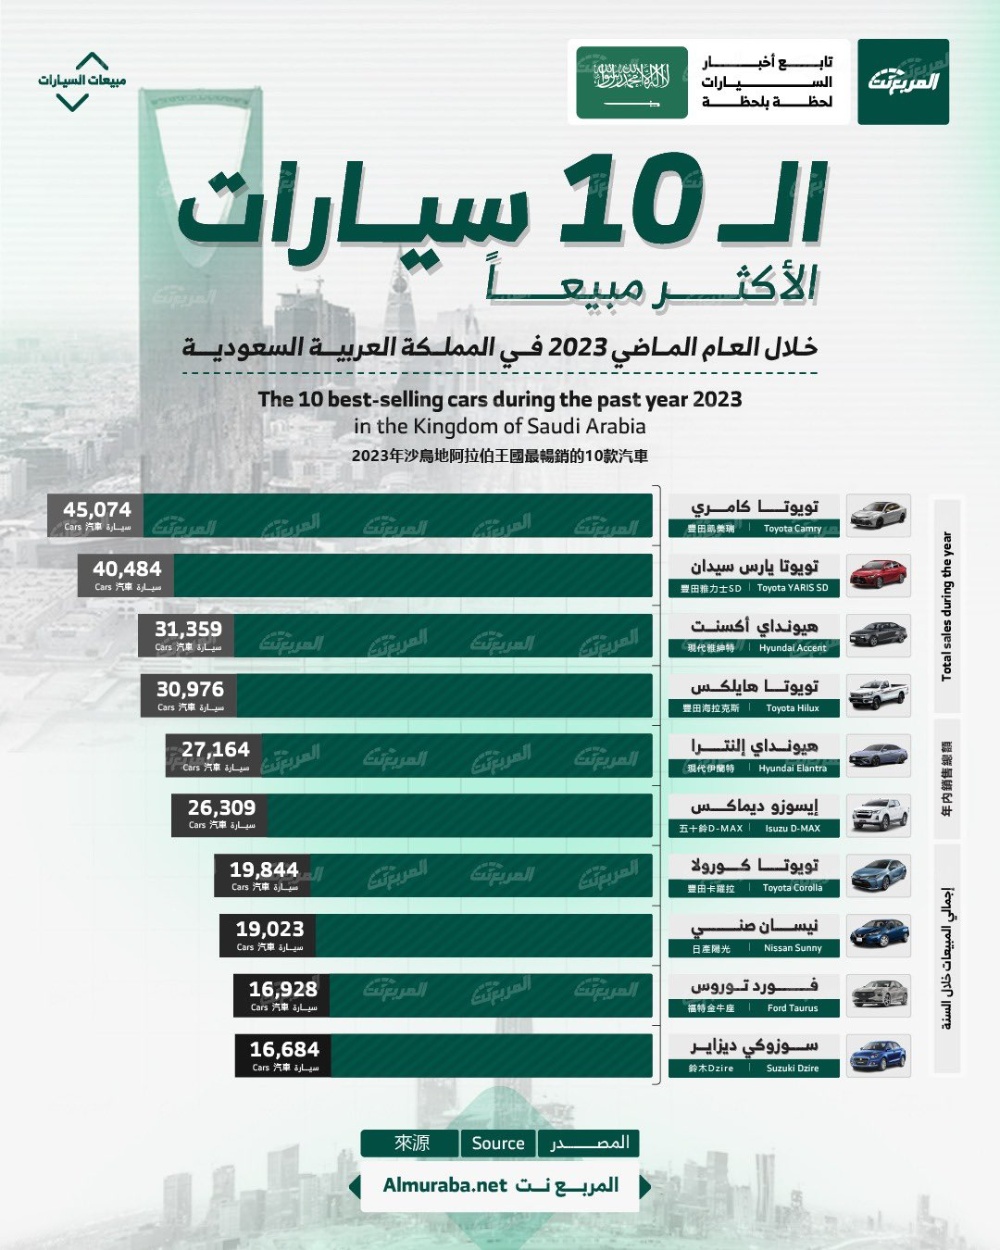 أكثر 10 سيارات مبيعًا في المملكة العربية السعودية خلال عام 2023.. بالأرقام 1